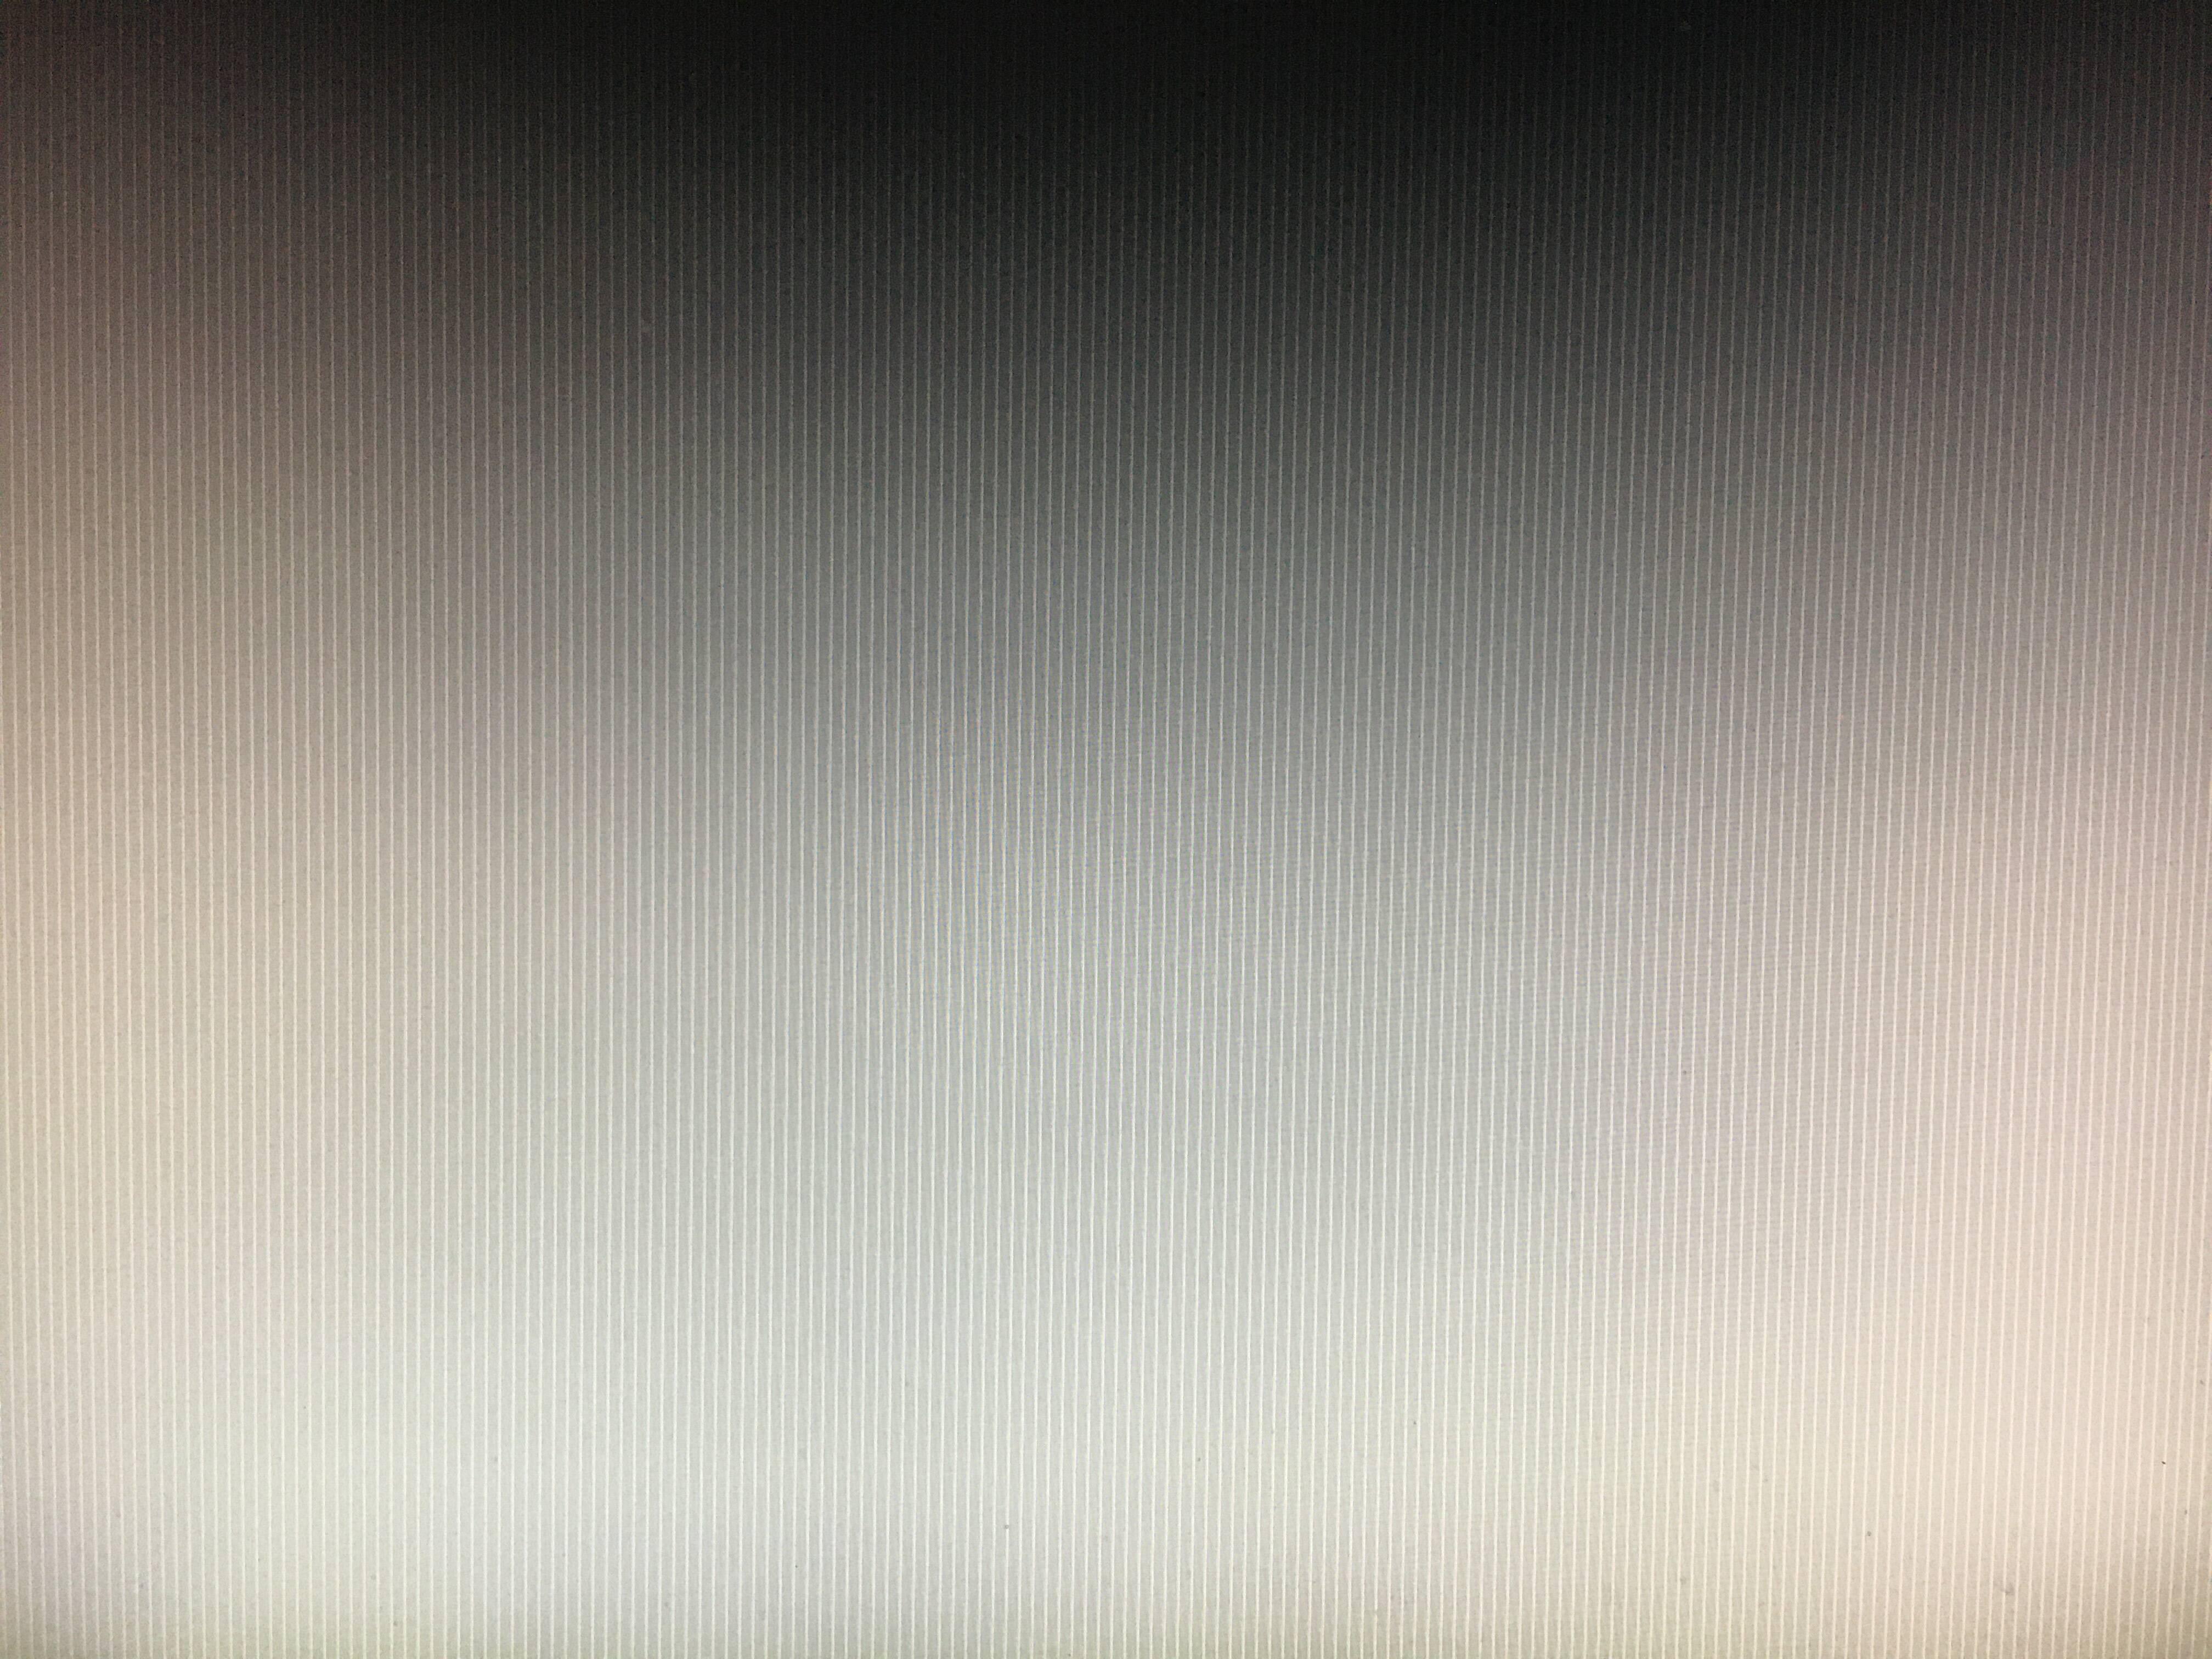 Серый экран самсунг. Серый экран. Серый экран с полосками горизонтальные. Полоса на мониторе в сером цвете. Серый экран разных оттенков.